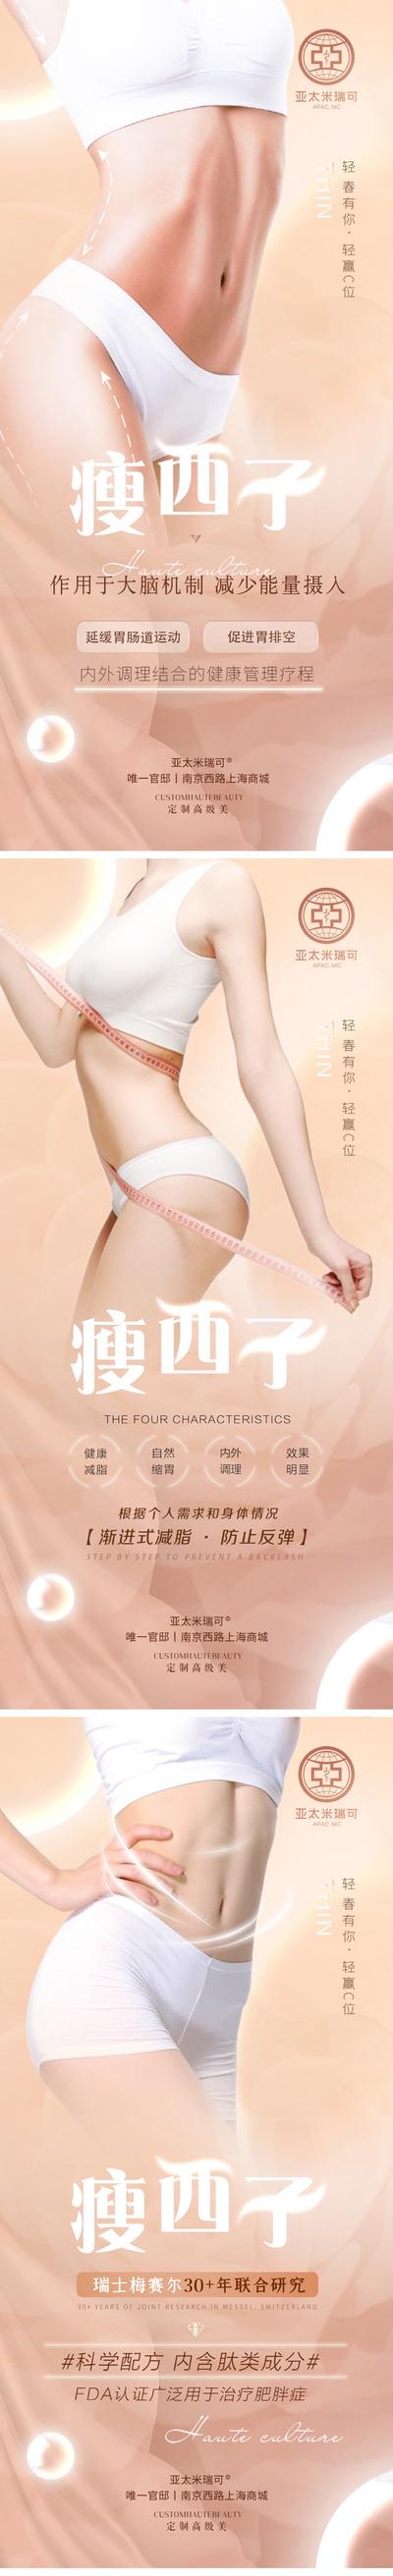 南门网 医美瘦身美体宣传系列海报